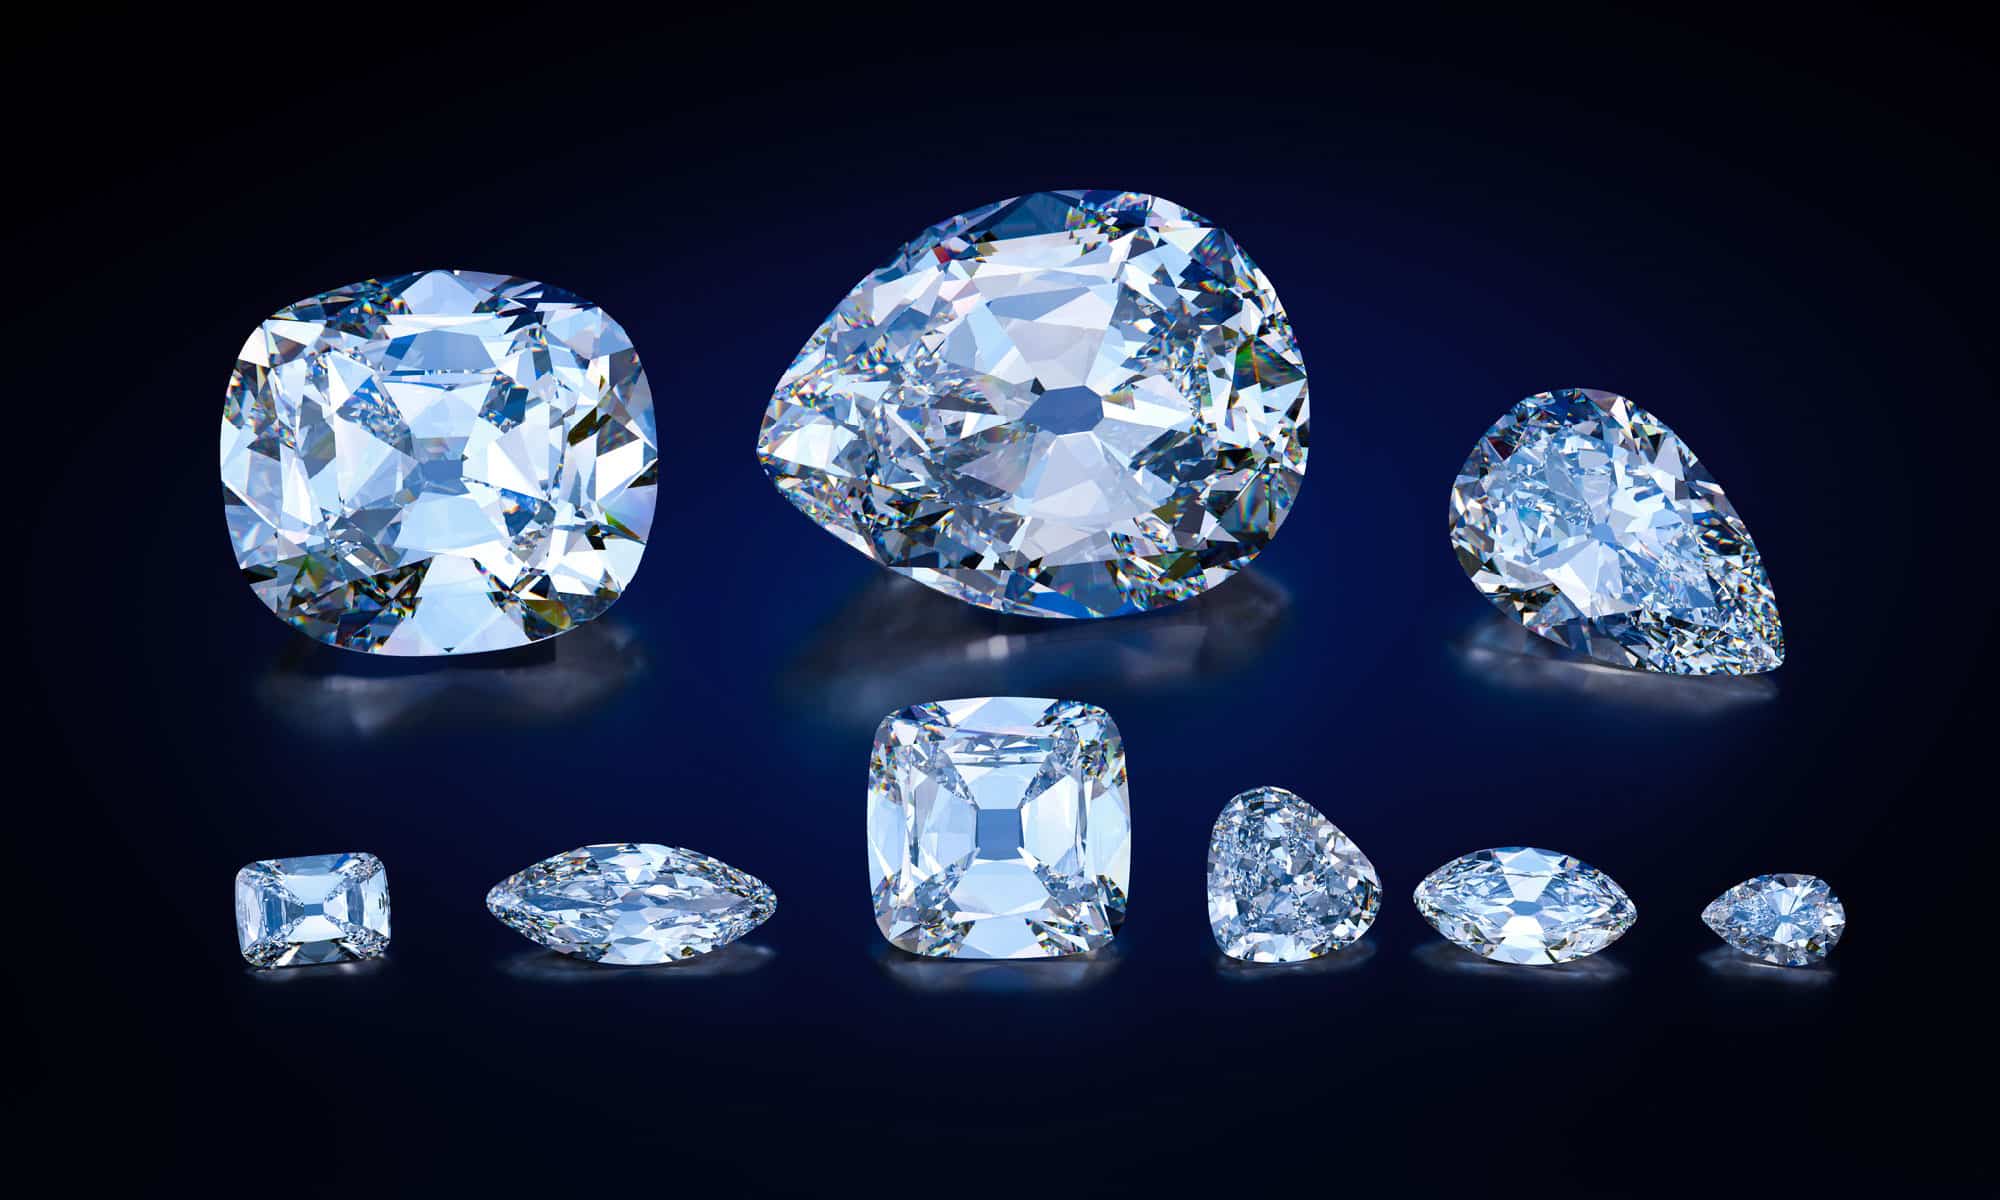 3D replica of nine major jewels cut from the biggest diamond Cullinan